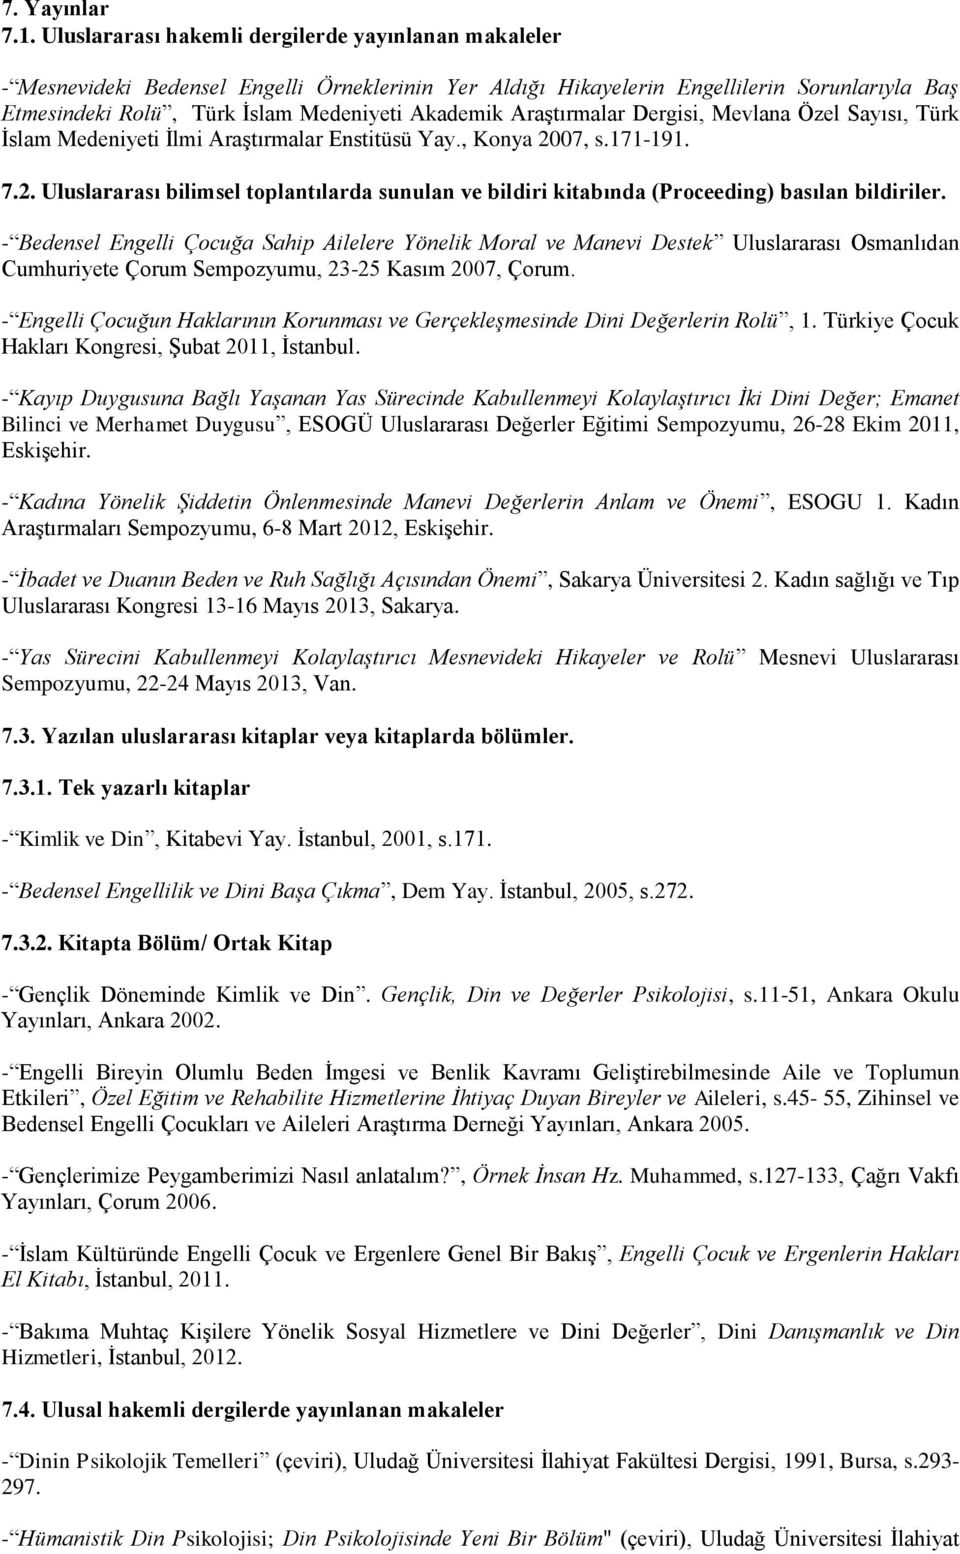 Araştırmalar Dergisi, Mevlana Özel Sayısı, Türk İslam Medeniyeti İlmi Araştırmalar Enstitüsü Yay., Konya 20